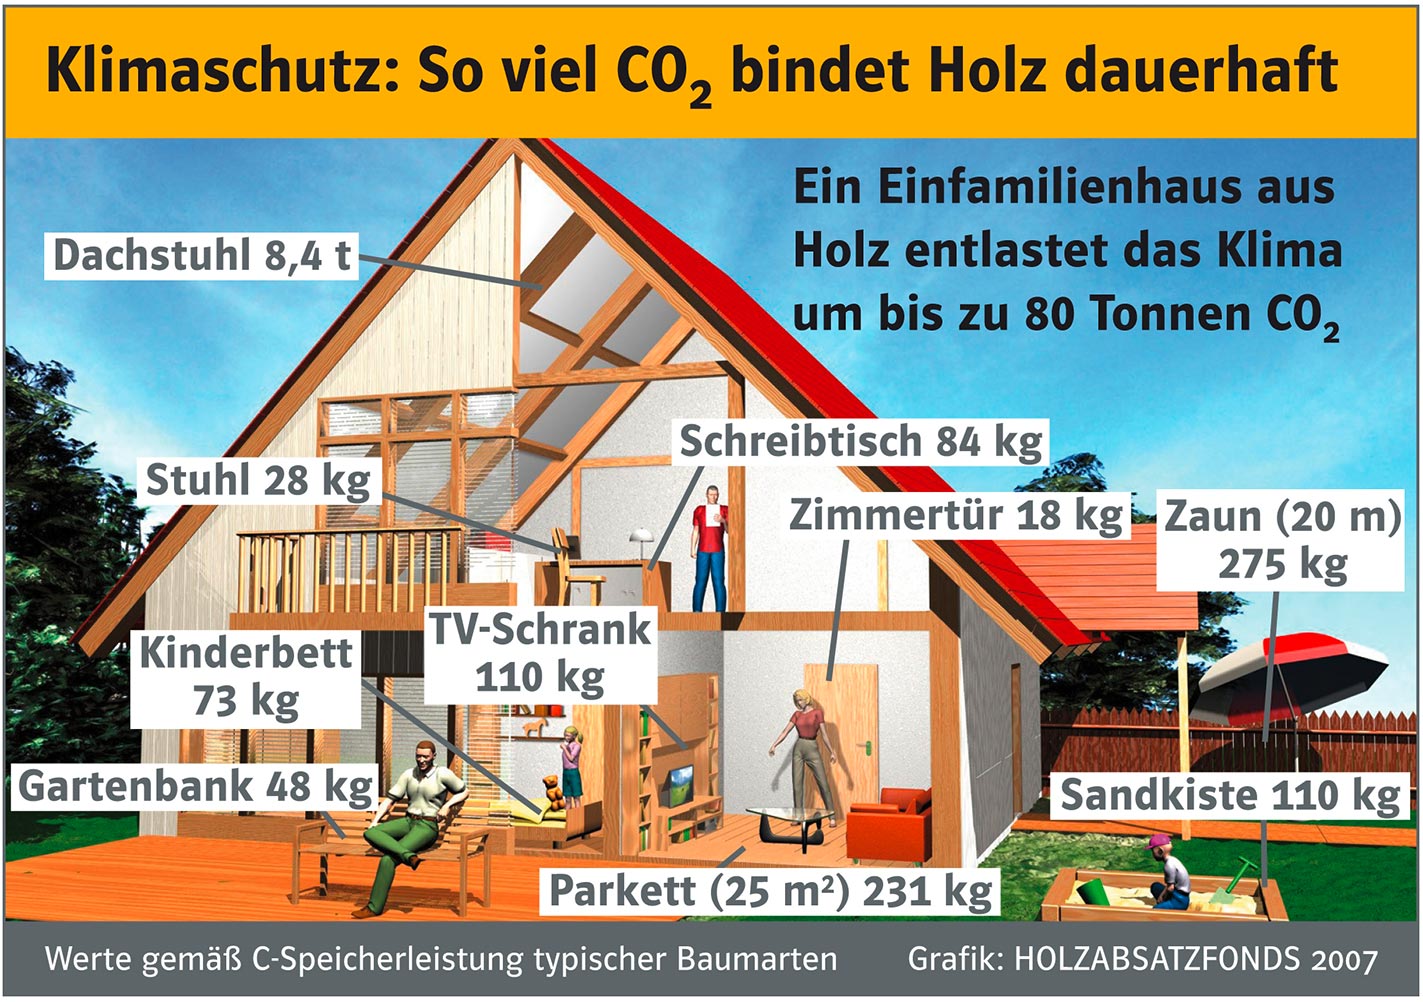 CO2-Speicherleistung von Holz